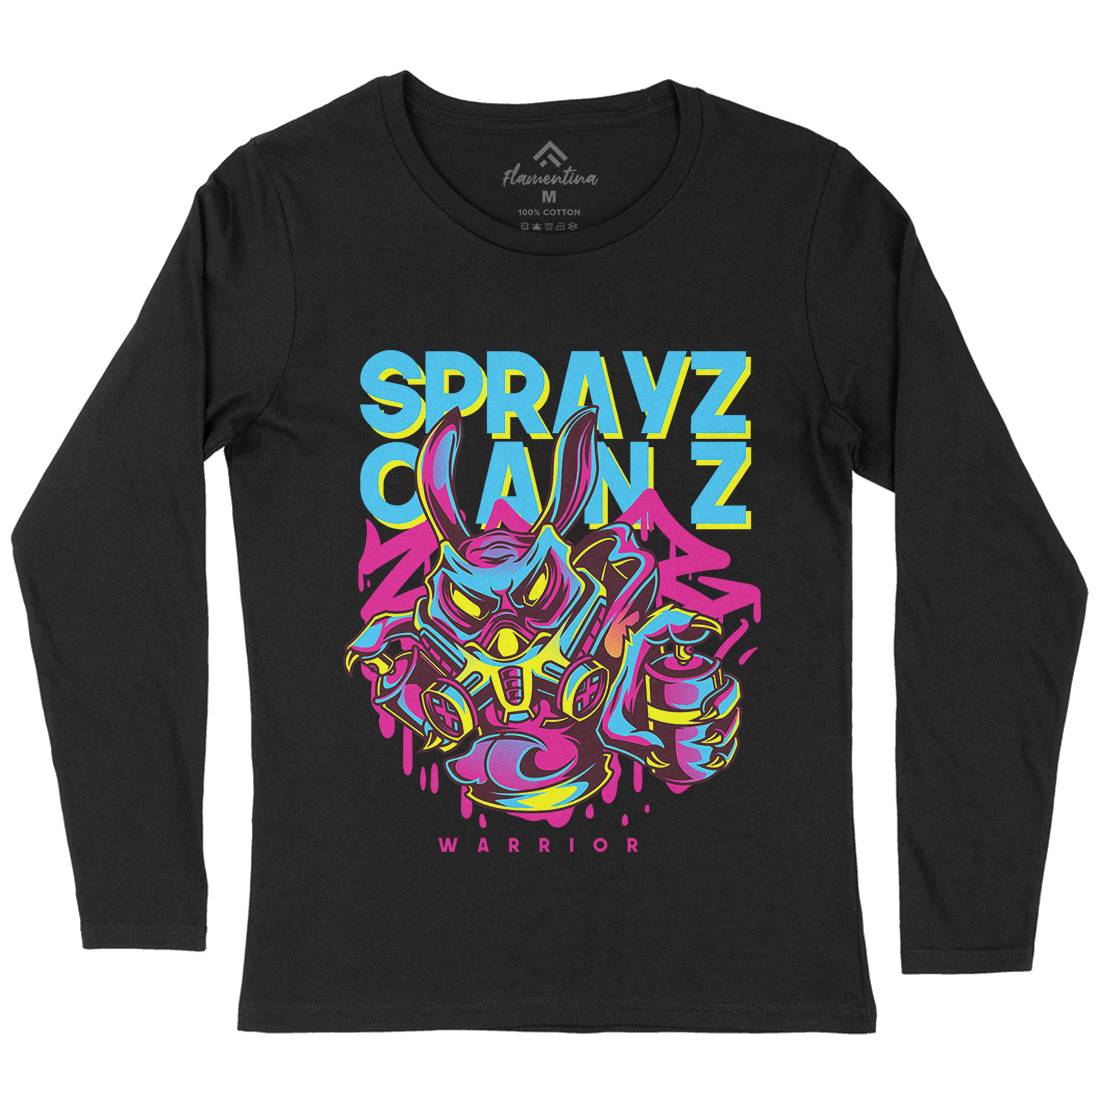 Spray Cans Womens Long Sleeve T-Shirt Graffiti D833